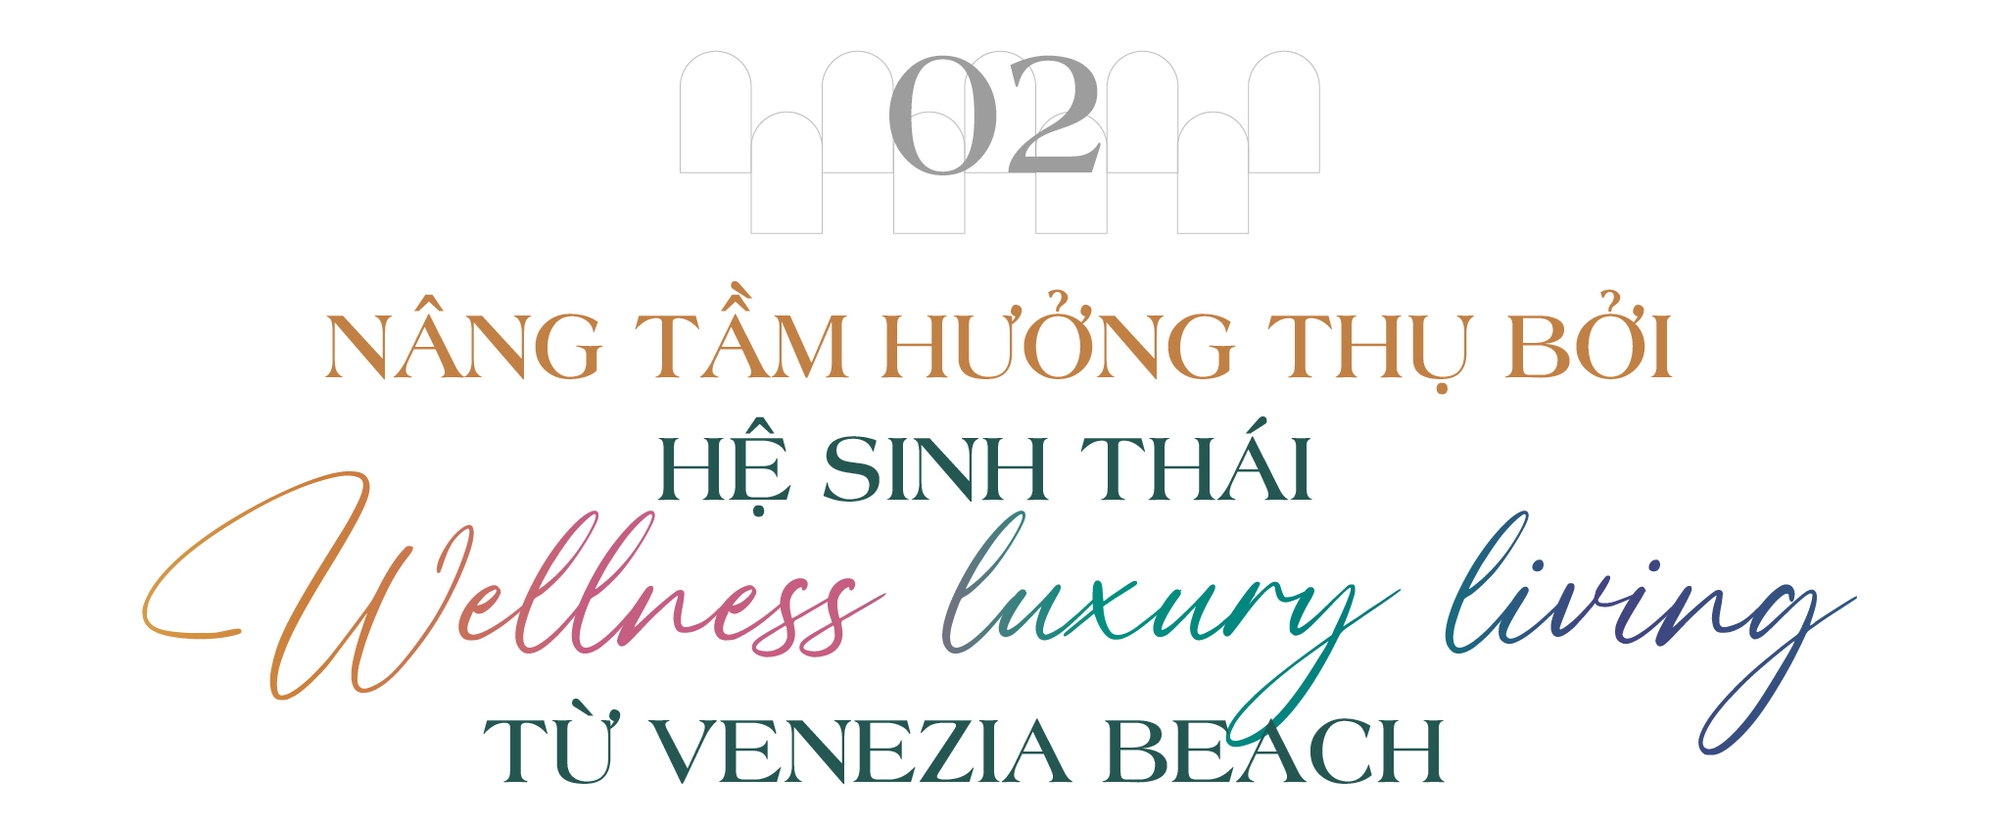 Tích sản hạnh phúc truyền đời trong hệ sinh thái Wellness Luxury Living tại Hometel biển The Venice 5&6 - Ảnh 6.